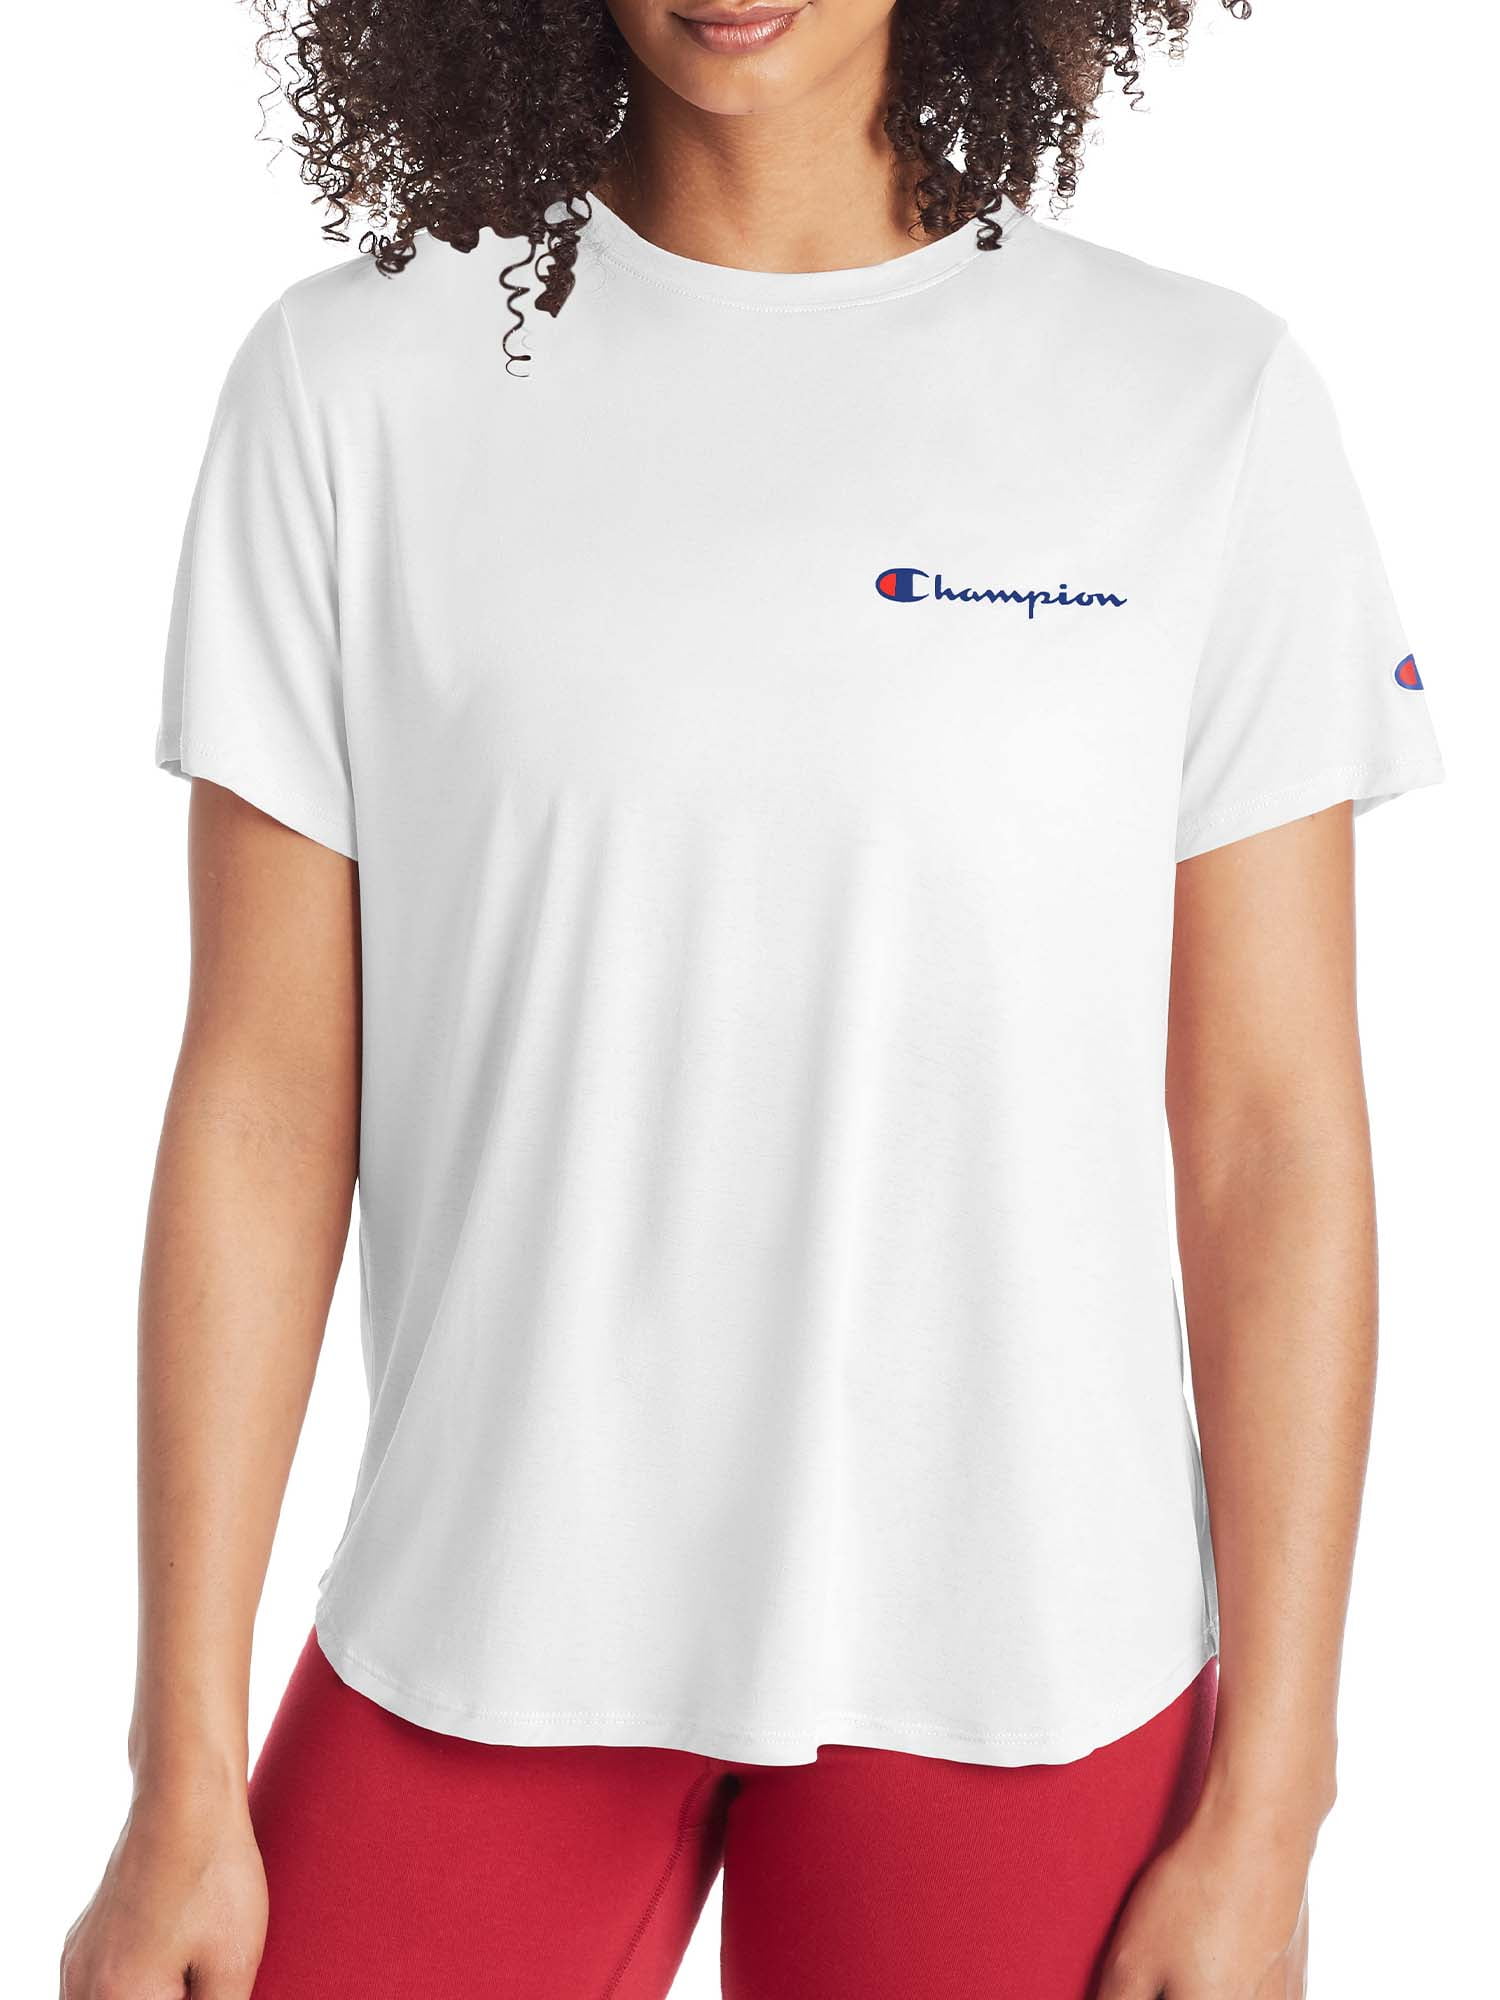 Langt væk abort Nøjagtig Champion Short Sleeve T-shirt (Women's) - Walmart.com